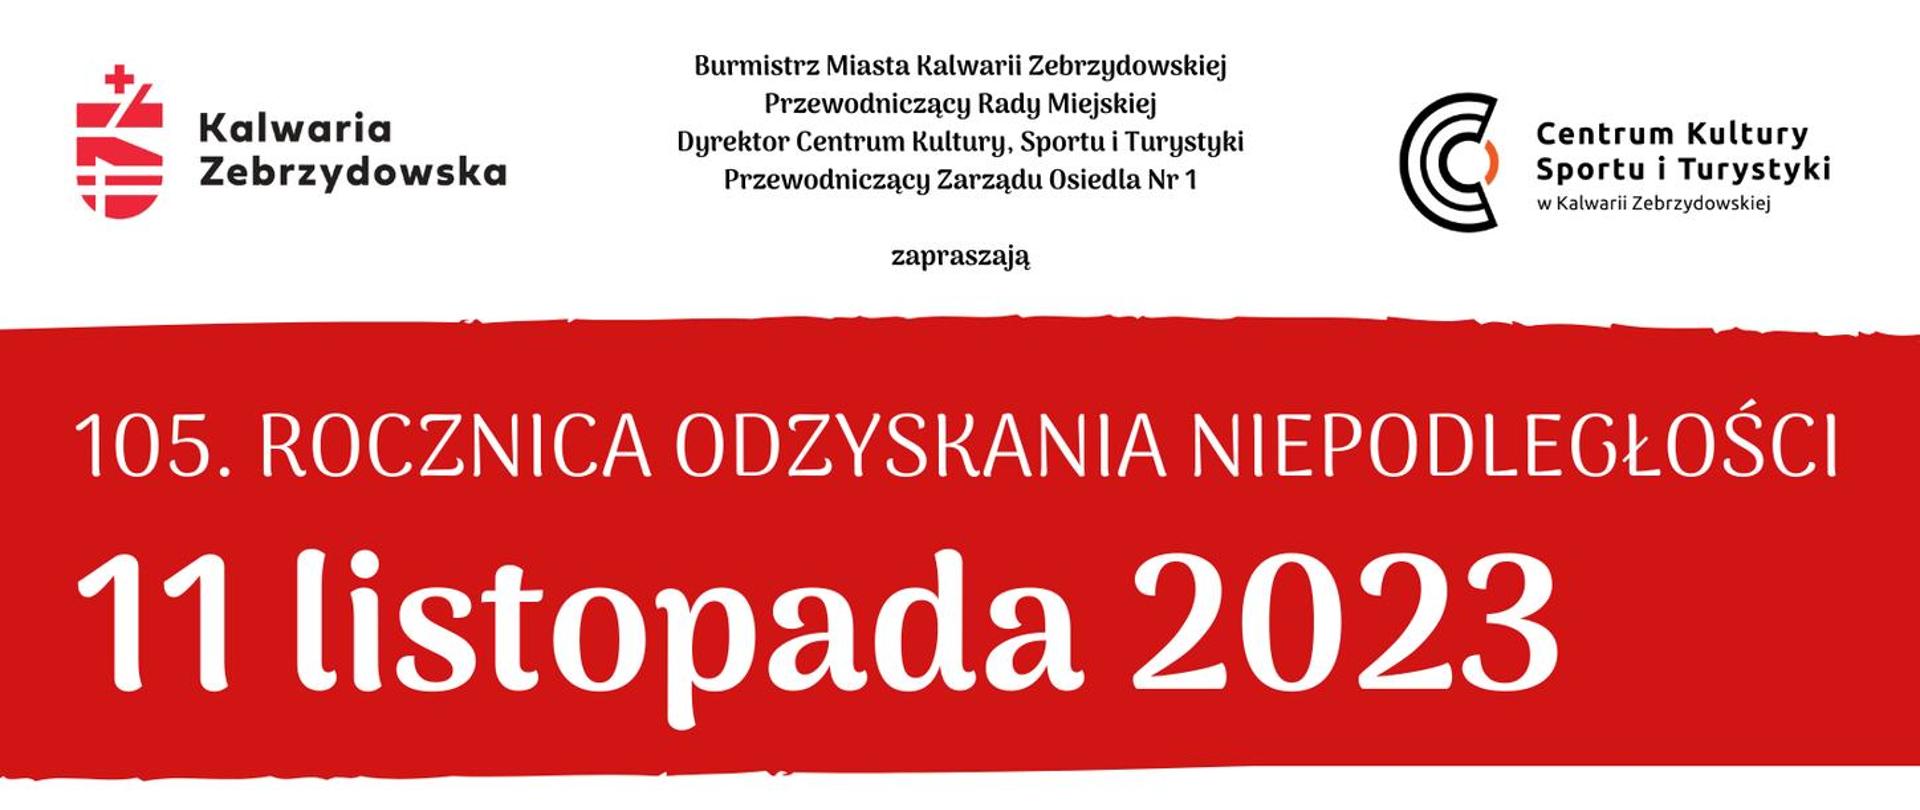 Utrzymany w bało-czerwonej kolorystyce plakat uroczystości 105. rocznicy odzyskania niepodległości, czarno-biała fotografia przedstawiająca Józefa Piłsudskiego; godło i flaga Polski.